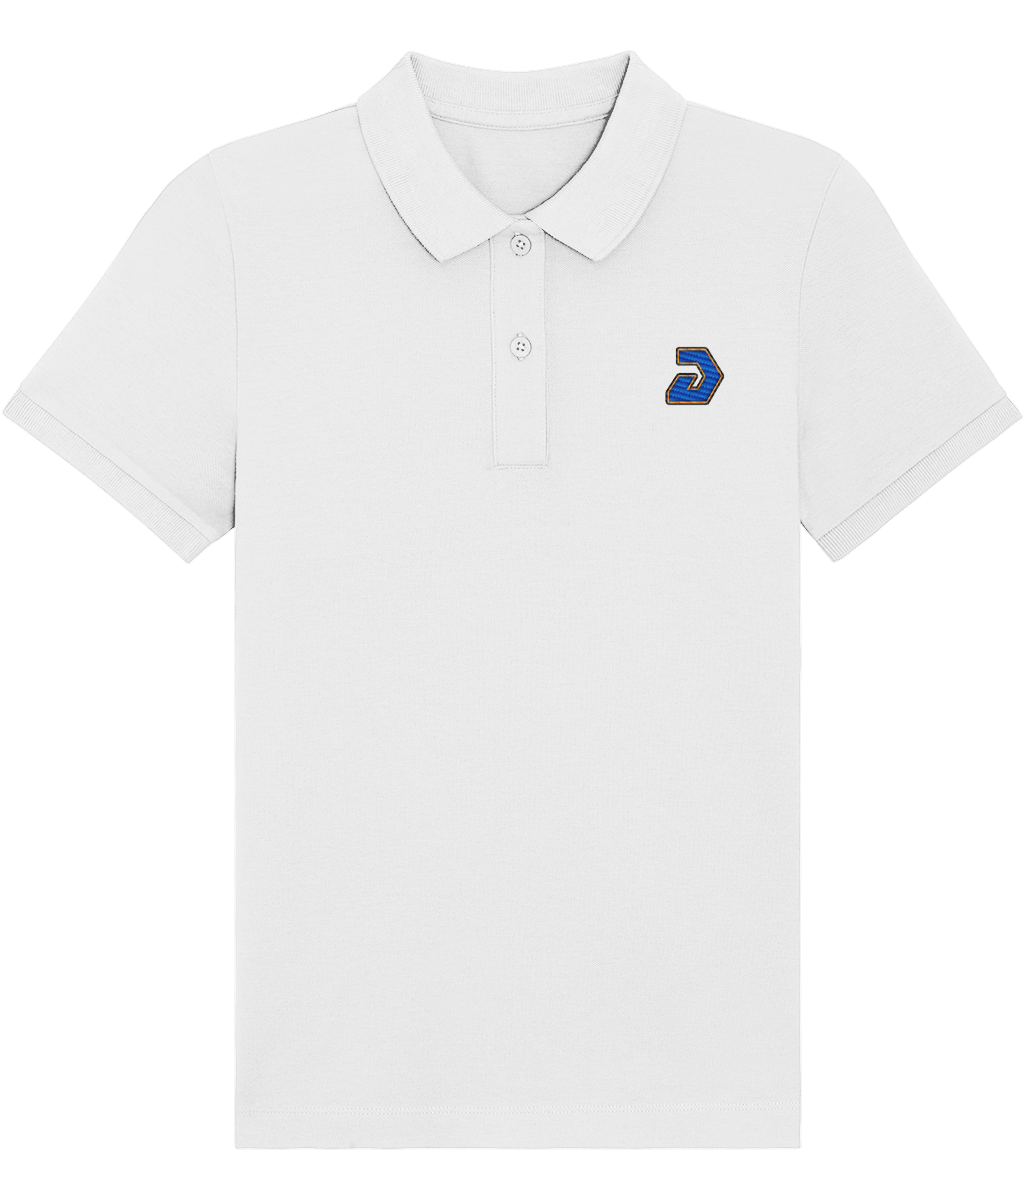 DeggyUK Embroidered Polo Shirt